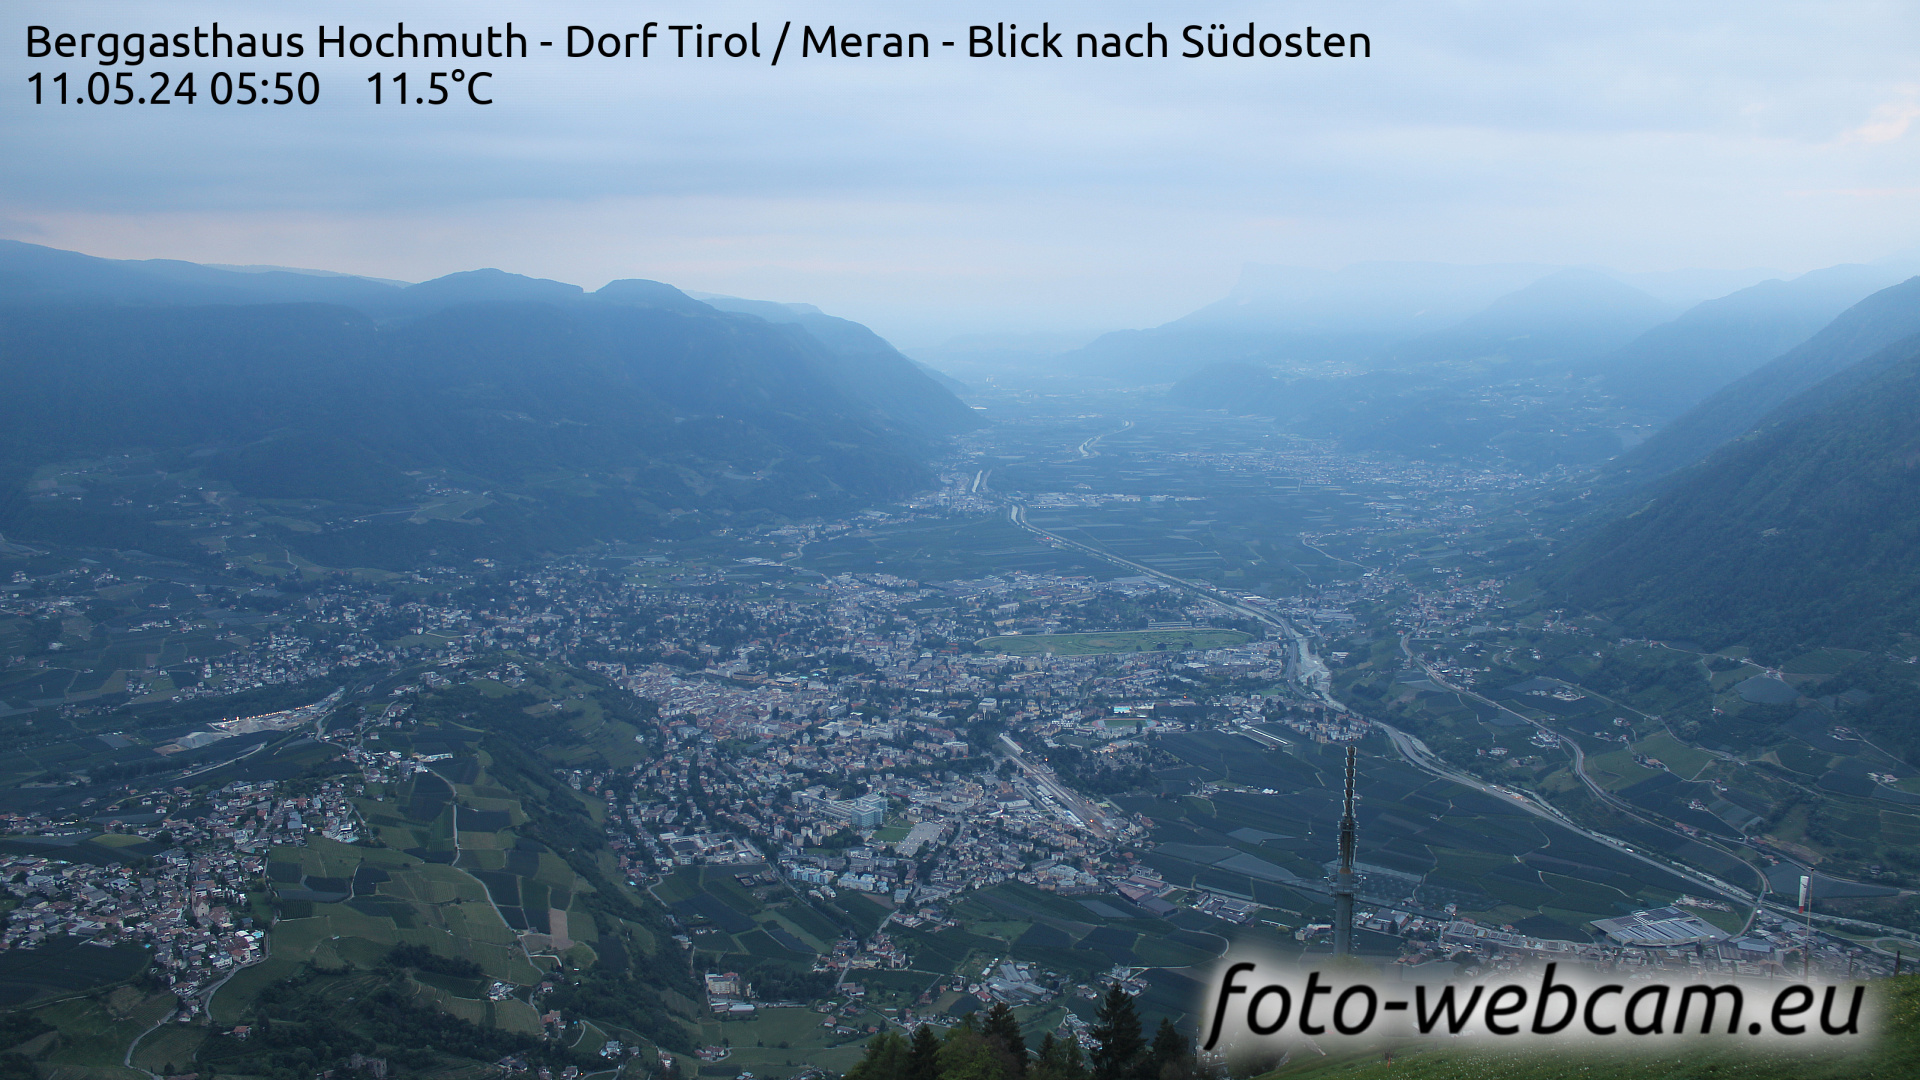 Tirol Wed. 05:56